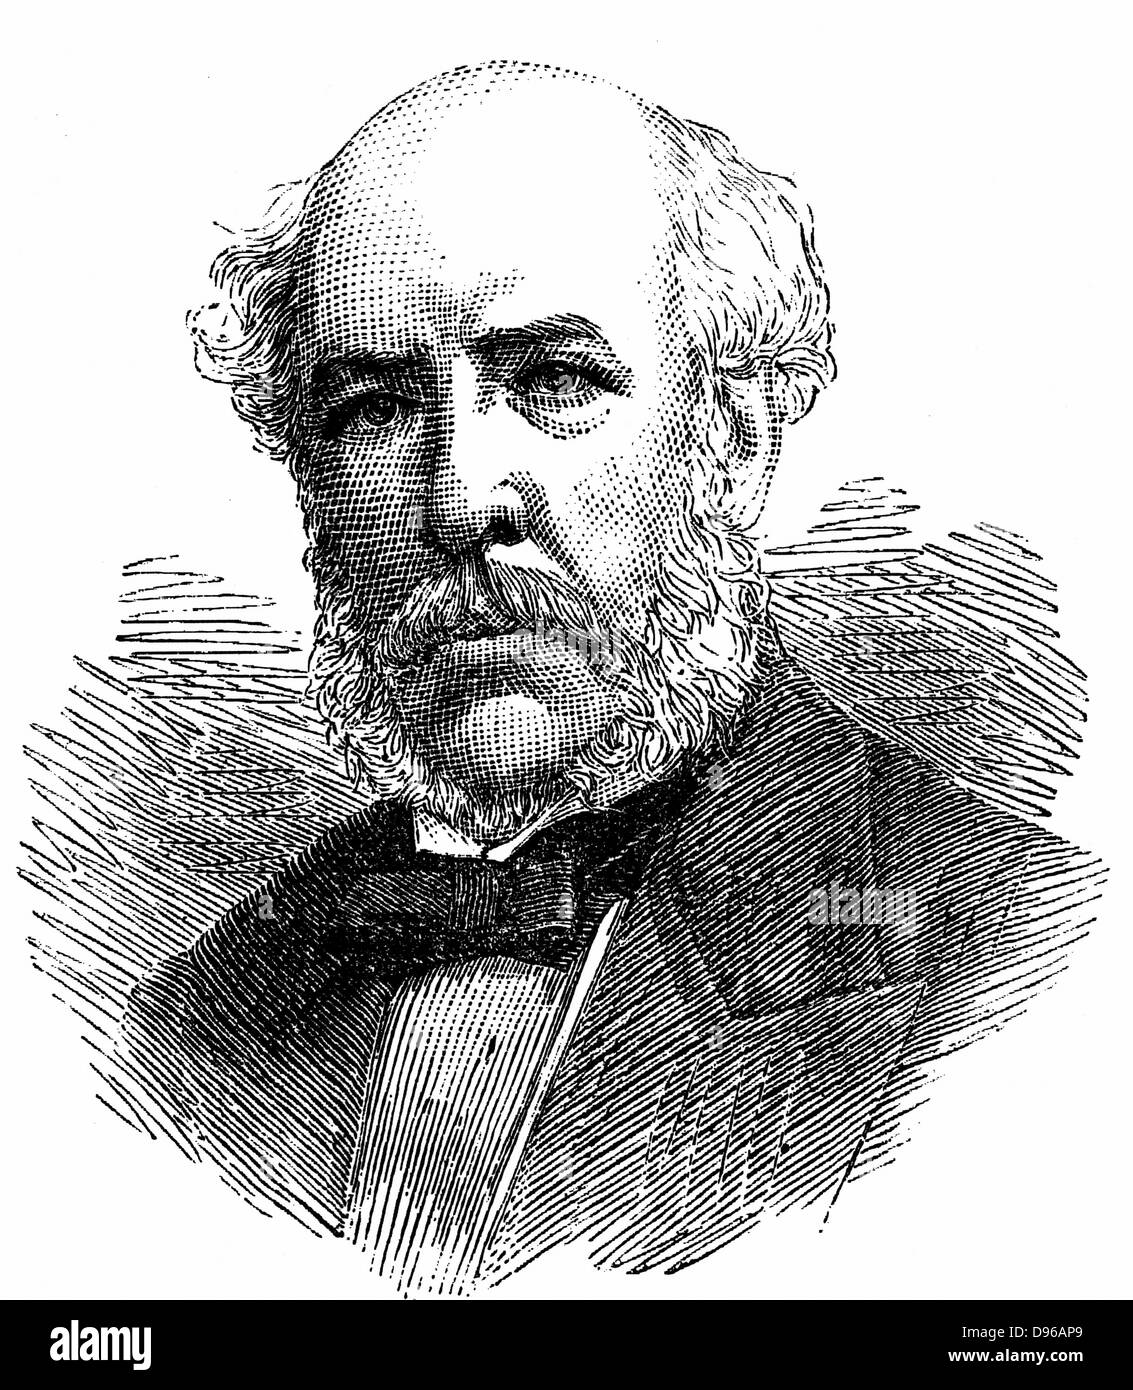 William Henry Barlow (1812-1902), britischer Ingenieur; erfunden Barlow saddleback Rail (1859); Ingenieur der Neuen Tay Bridge, Schottland, 1882. Gravur Stockfoto